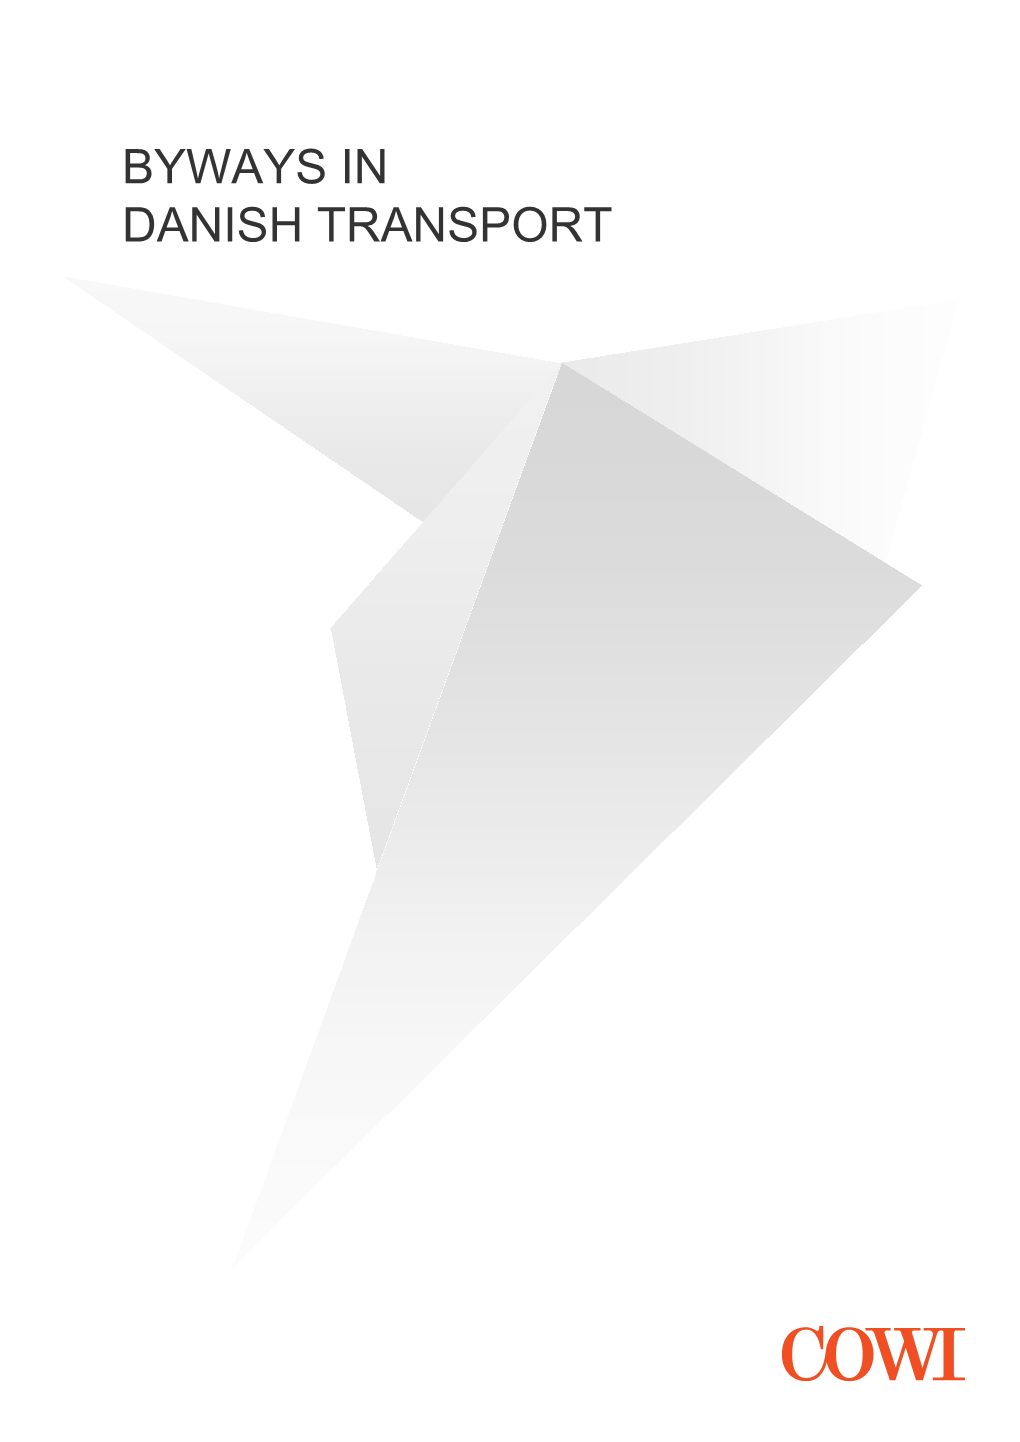 Sideveje I Dansk Transport